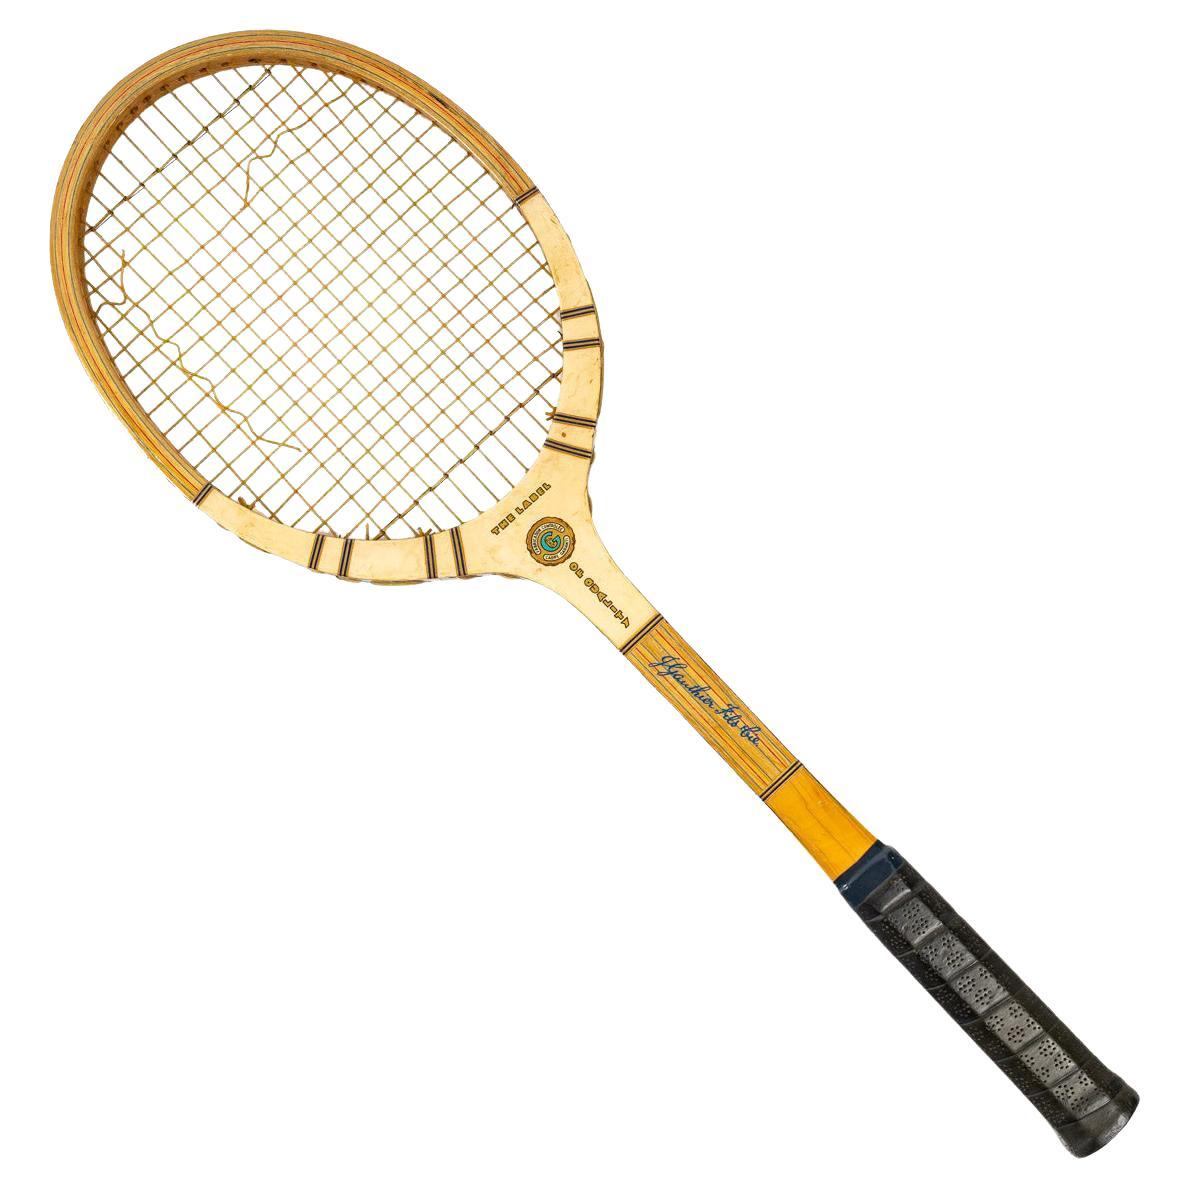 Vintage Authentic Louis Vuitton Tennis Racket or Squash Racquet